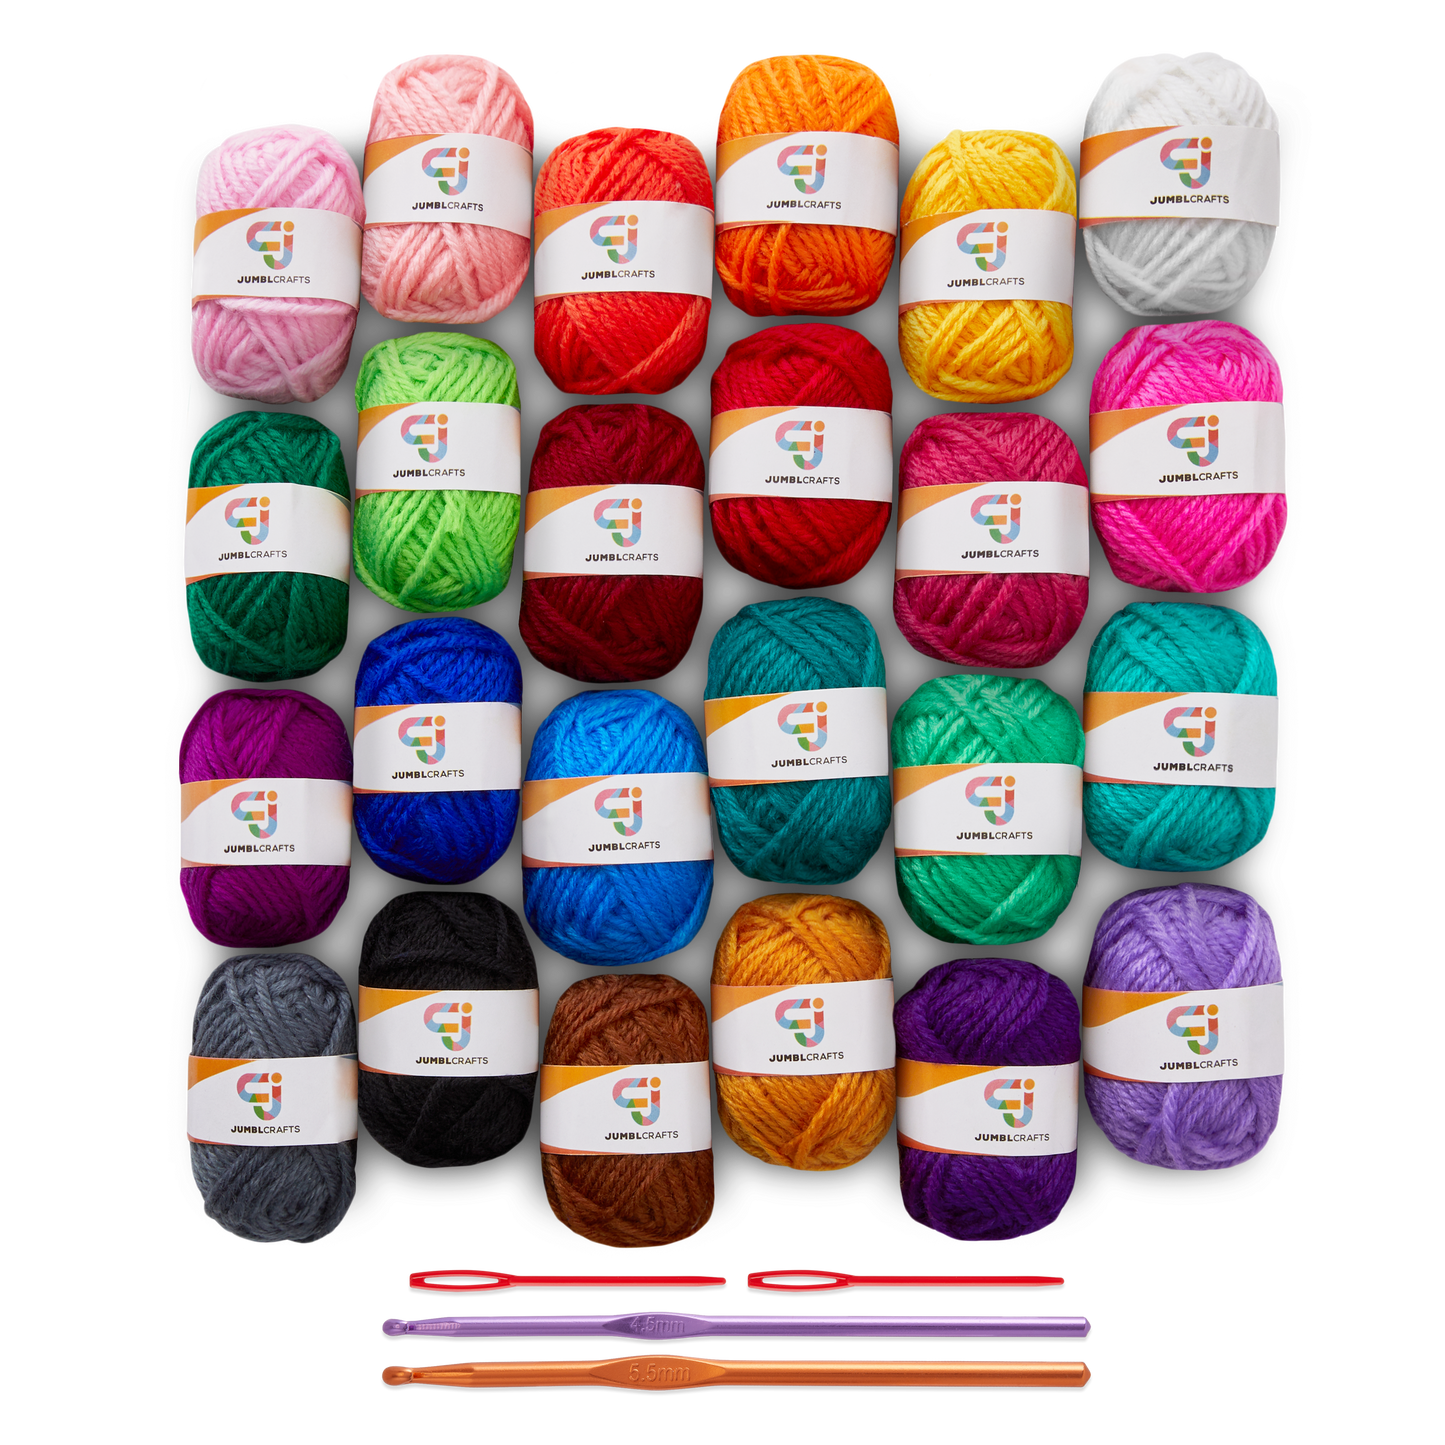 24-Yarn Crochet and Knitting Starter Kit with 2 Crochet Hooks and 2 Weaving Needles